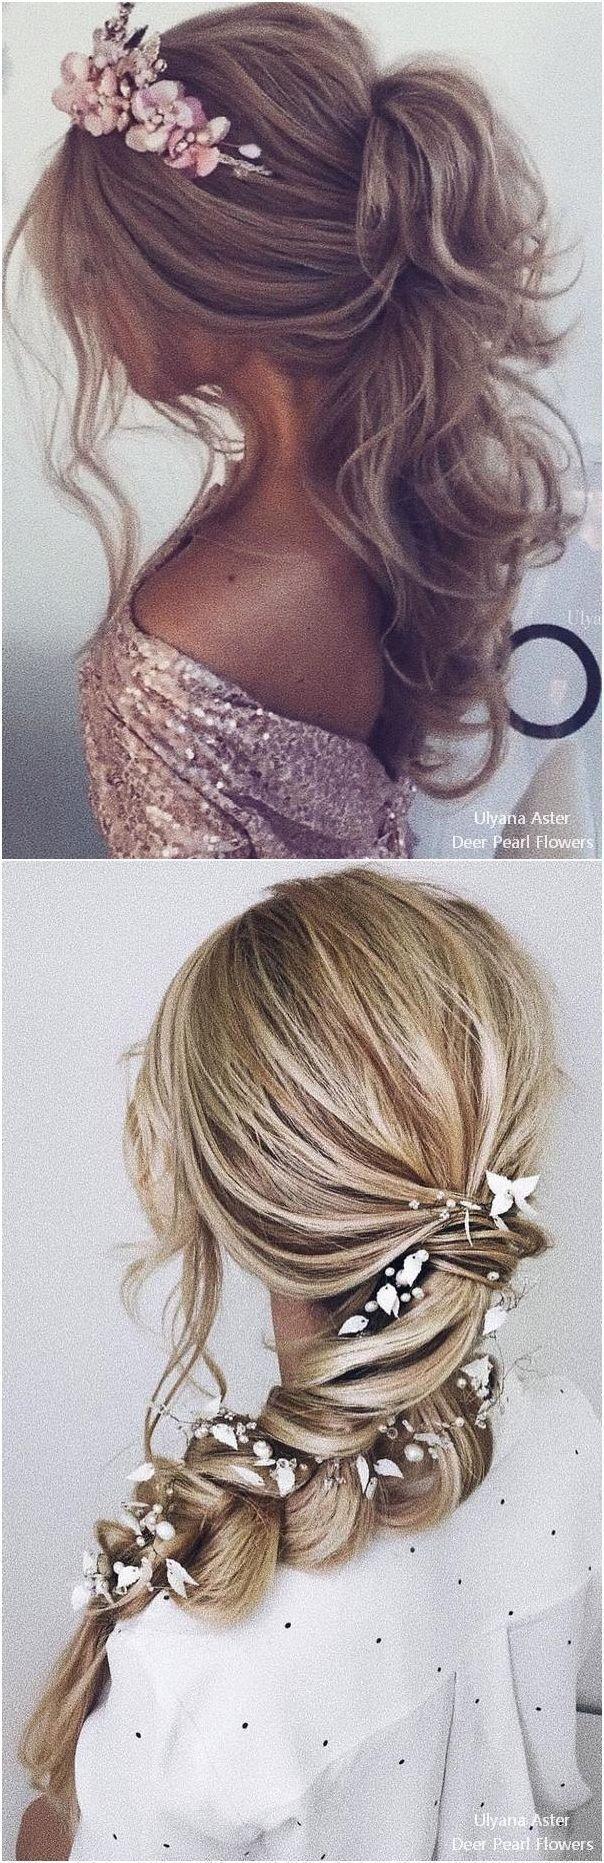 Hochzeit - Top 25 Ulyana Aster Wedding Hairstyles #weddings #weddinghairstyles #dpf #deerpearlflowers #hairstyles 